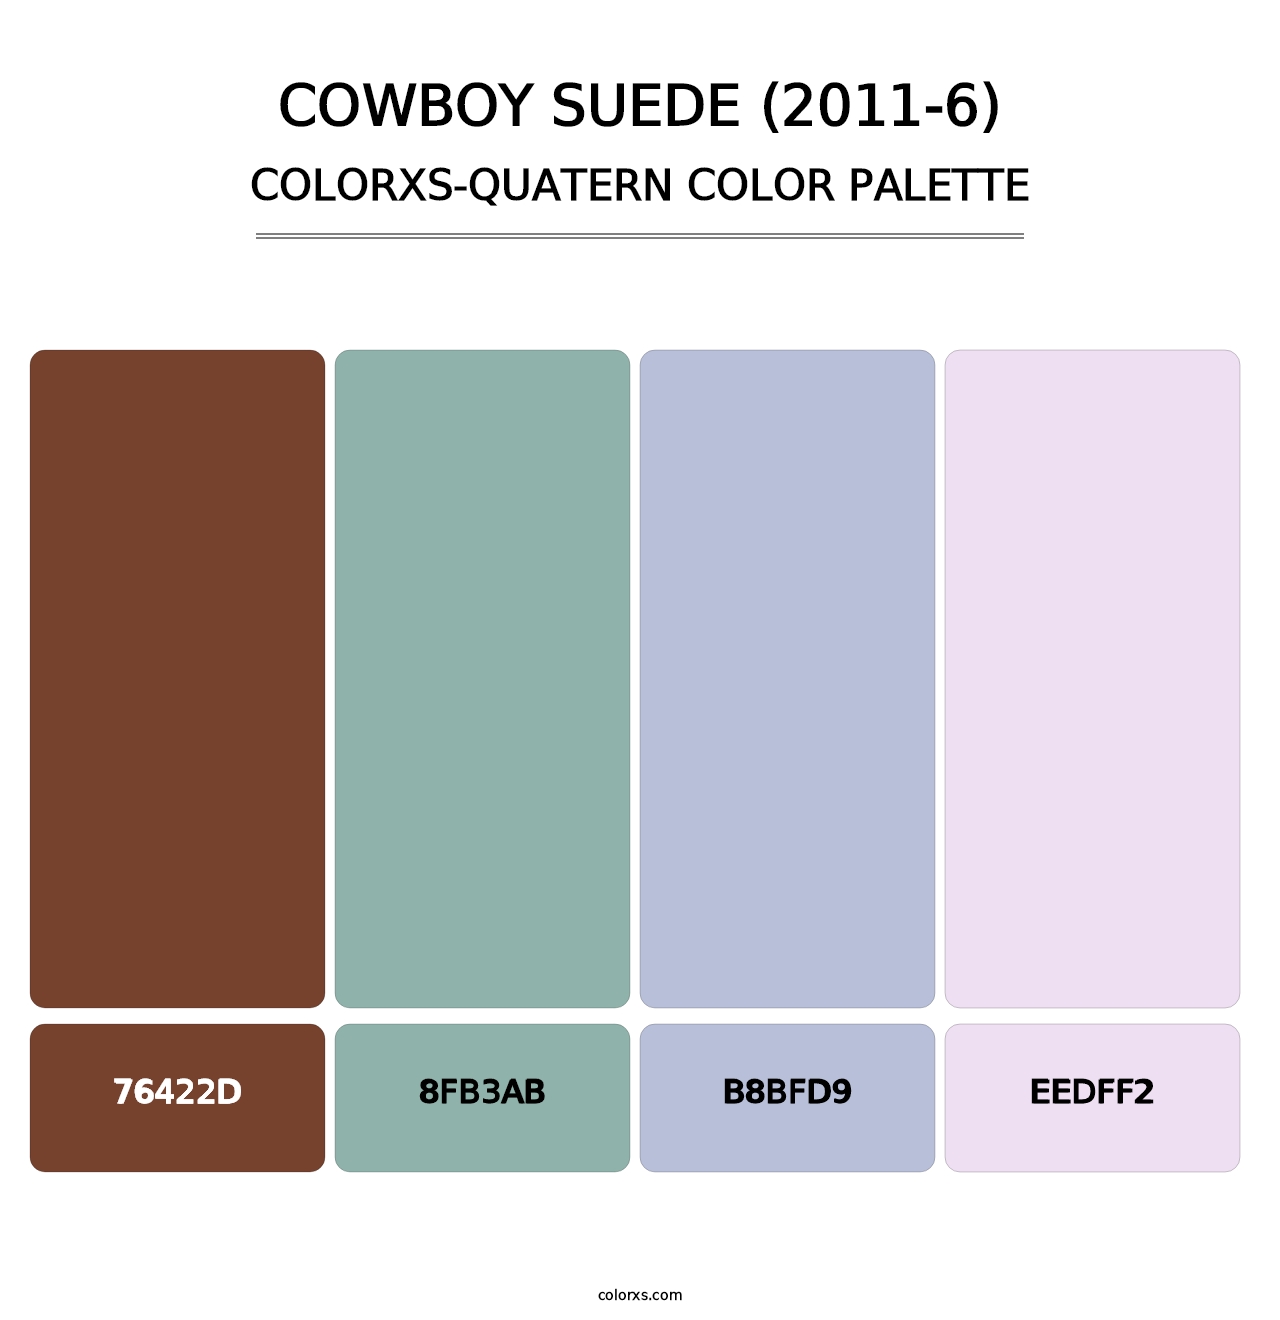 Cowboy Suede (2011-6) - Colorxs Quatern Palette